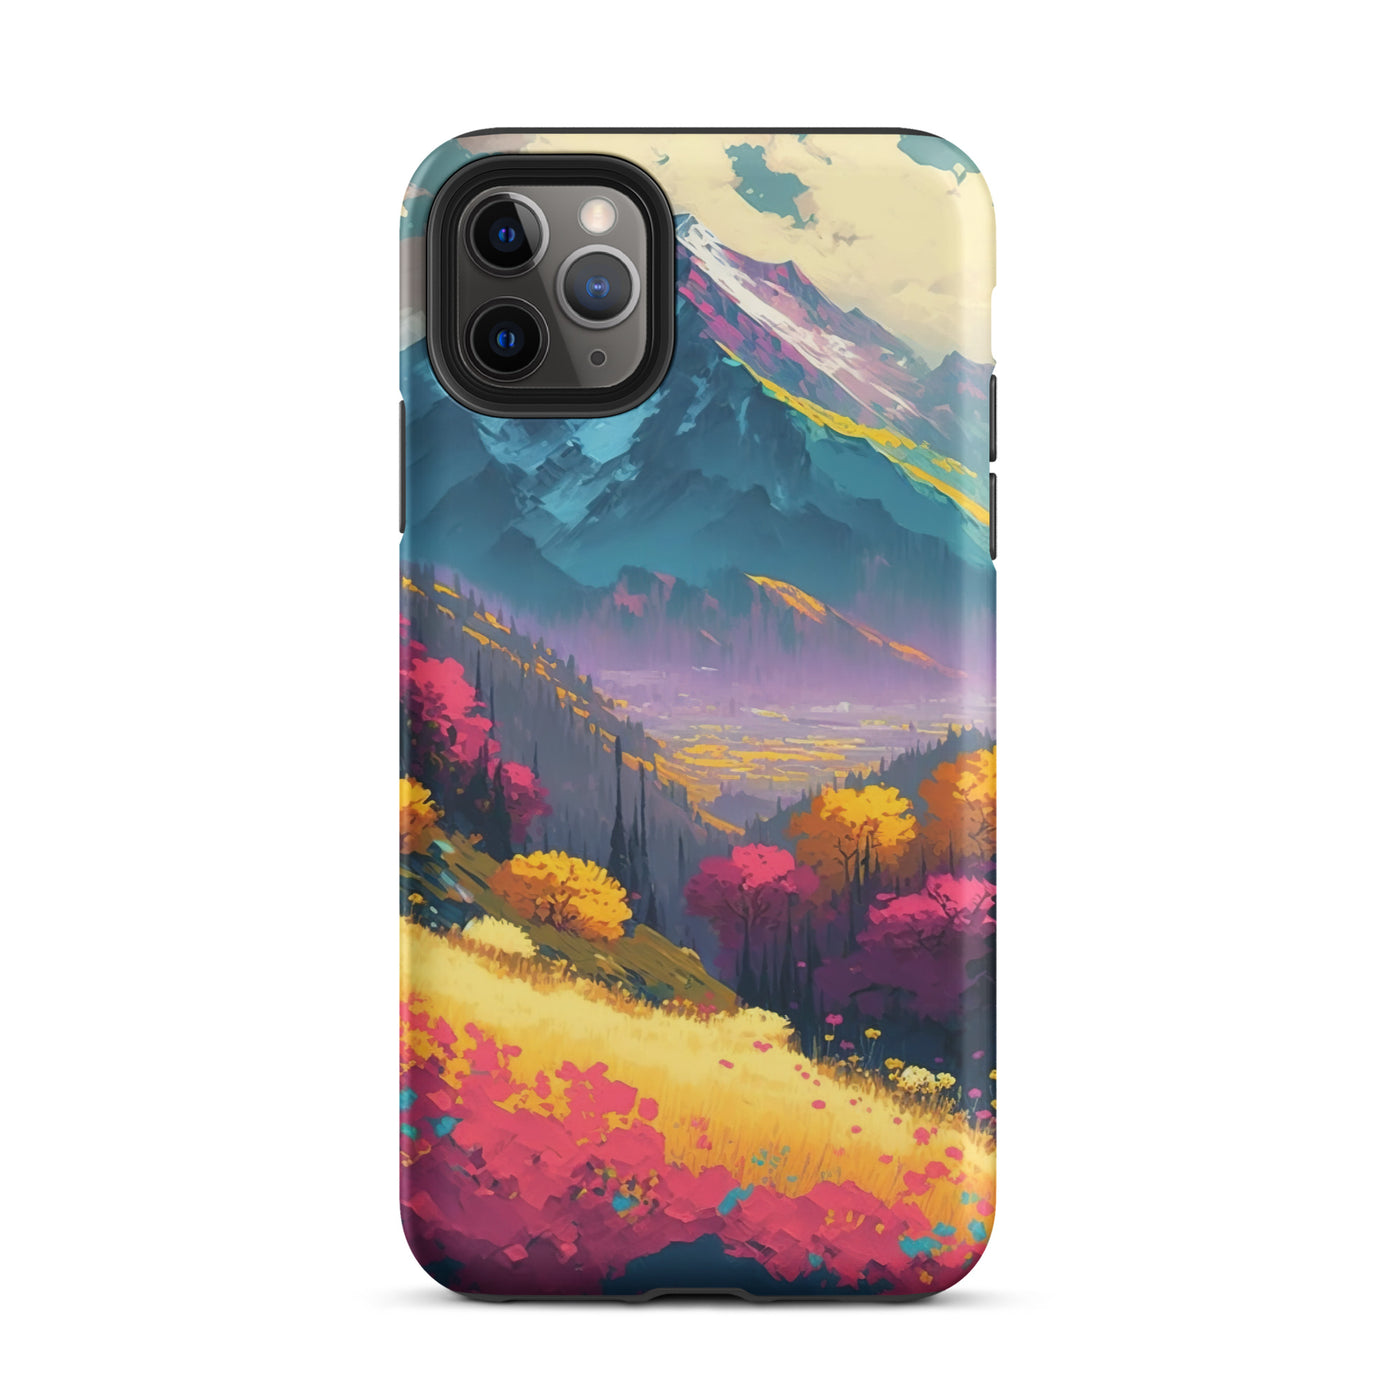 Berge, pinke und gelbe Bäume, sowie Blumen - Farbige Malerei - iPhone Schutzhülle (robust) berge xxx iPhone 11 Pro Max